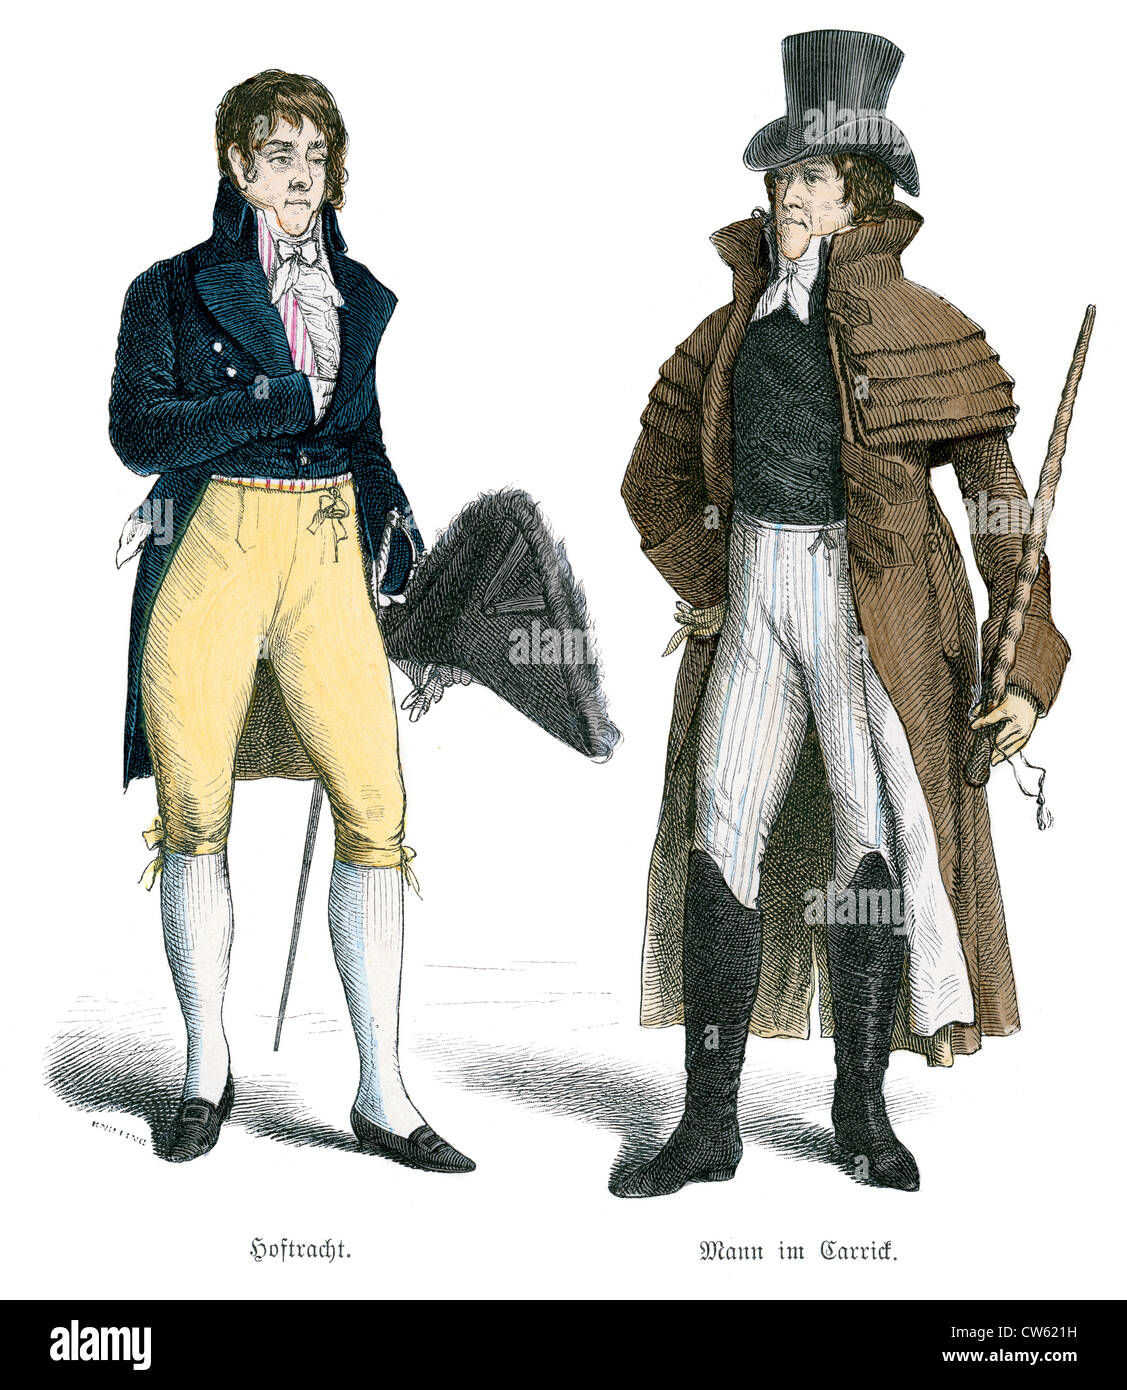 L'homme en robe de cour et l'autre en costume du début du 19e siècle Carrick Banque D'Images